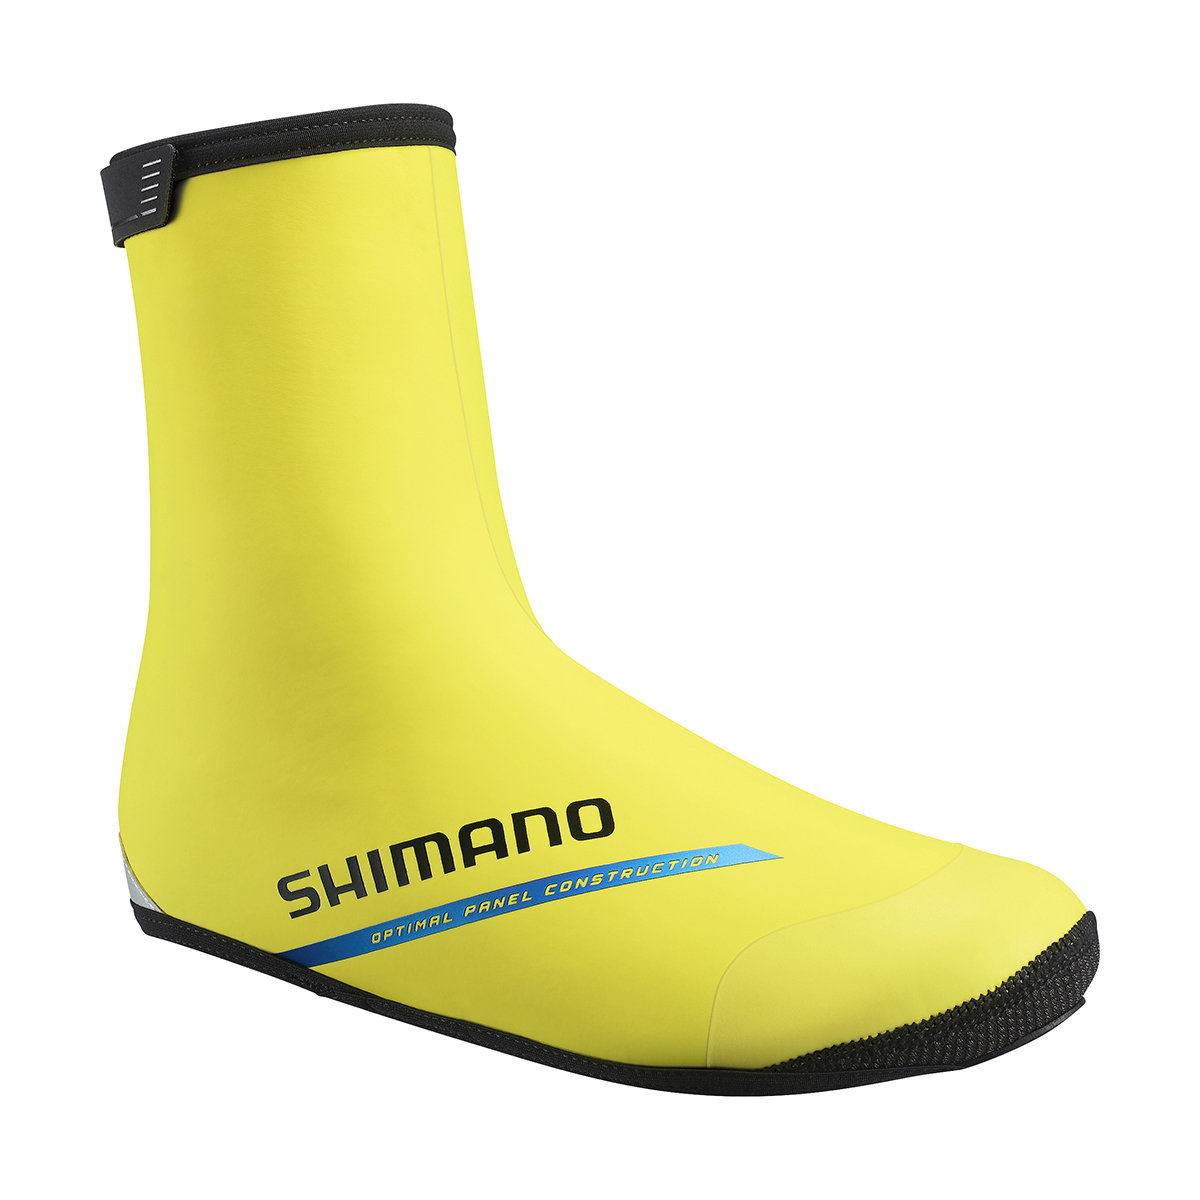 Shimano XC Thermal Shoe Covers, żółty M | EU 40-42 2021 Ochraniacze na buty i getry ECWFABWUS22UY0705